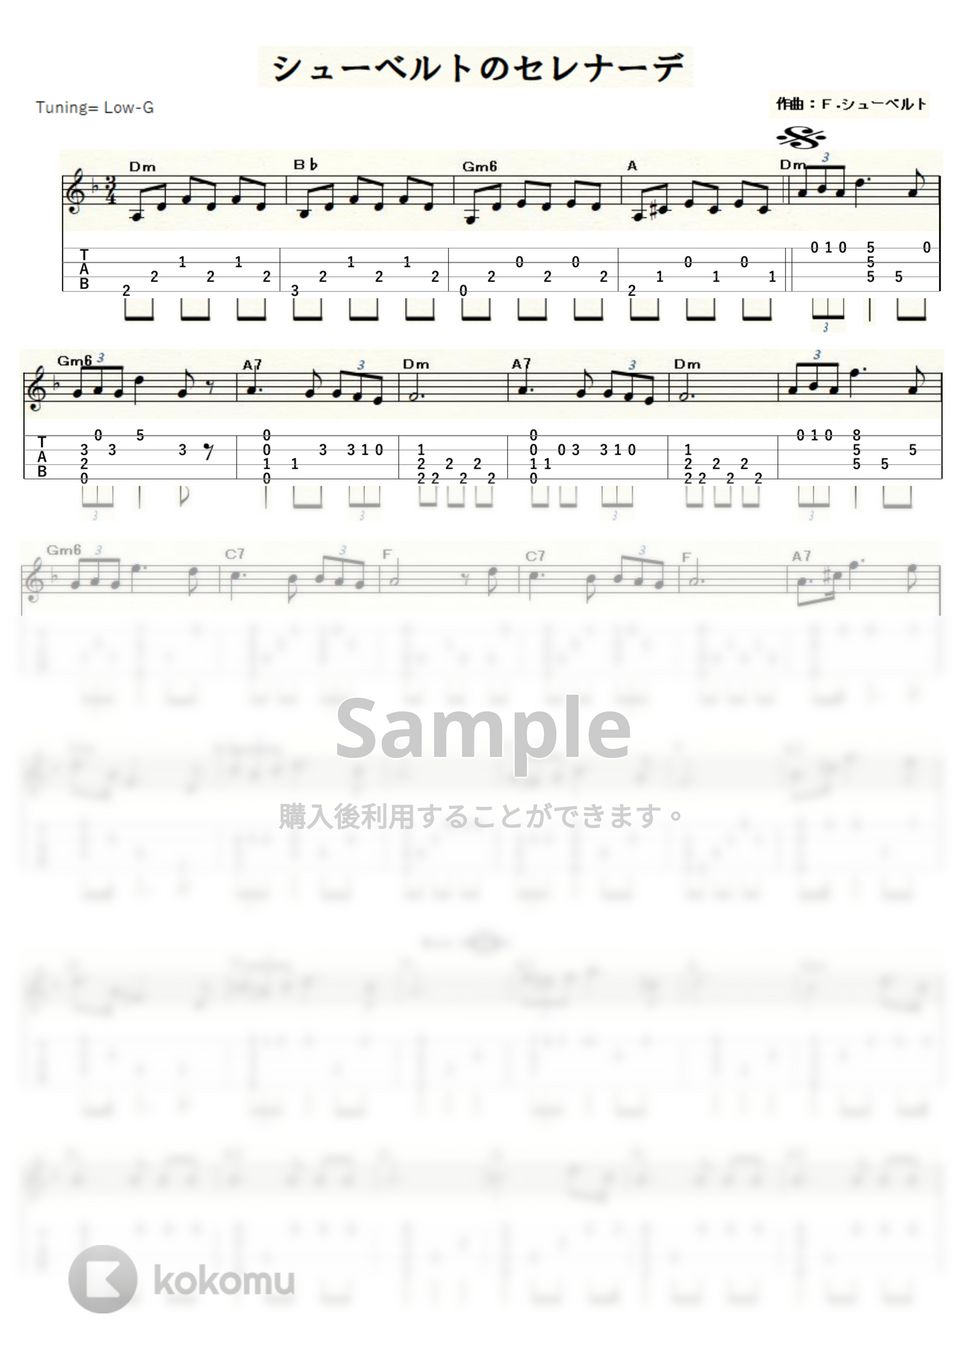 フランツ・シューベルト - シューベルトのセレナーデ (ｳｸﾚﾚｿﾛ / Low-G / 中級) by ukulelepapa